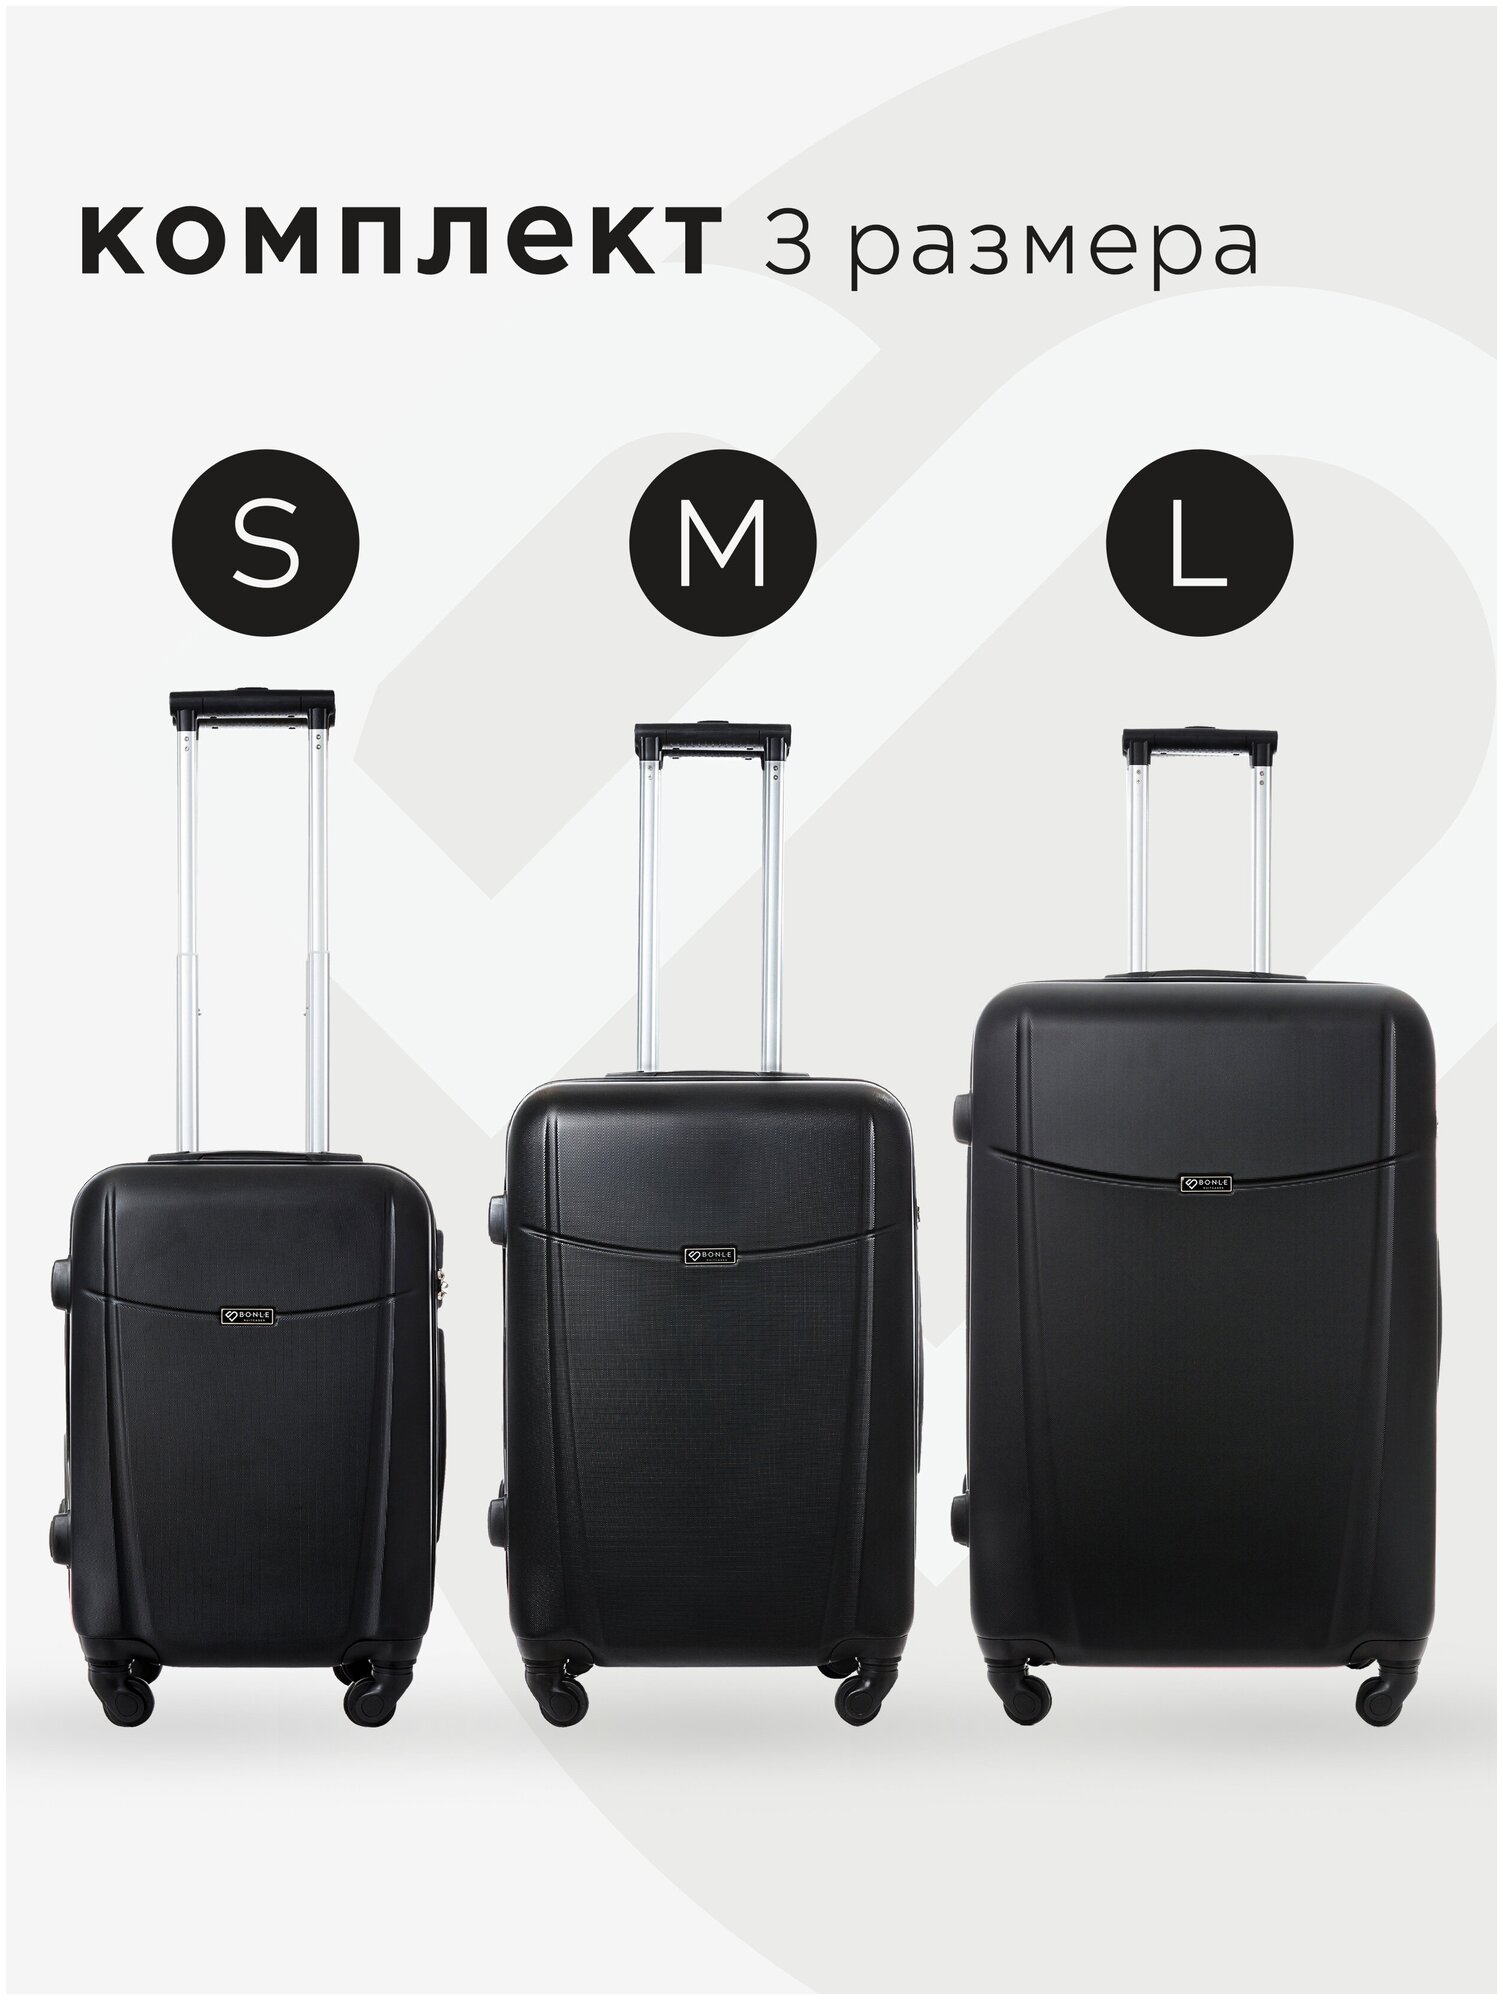 Комплект чемоданов 3шт, Тасмания, Черный, размер L,M,S маленький, средний, большой, ручная кладь,дорожный, не тканевый